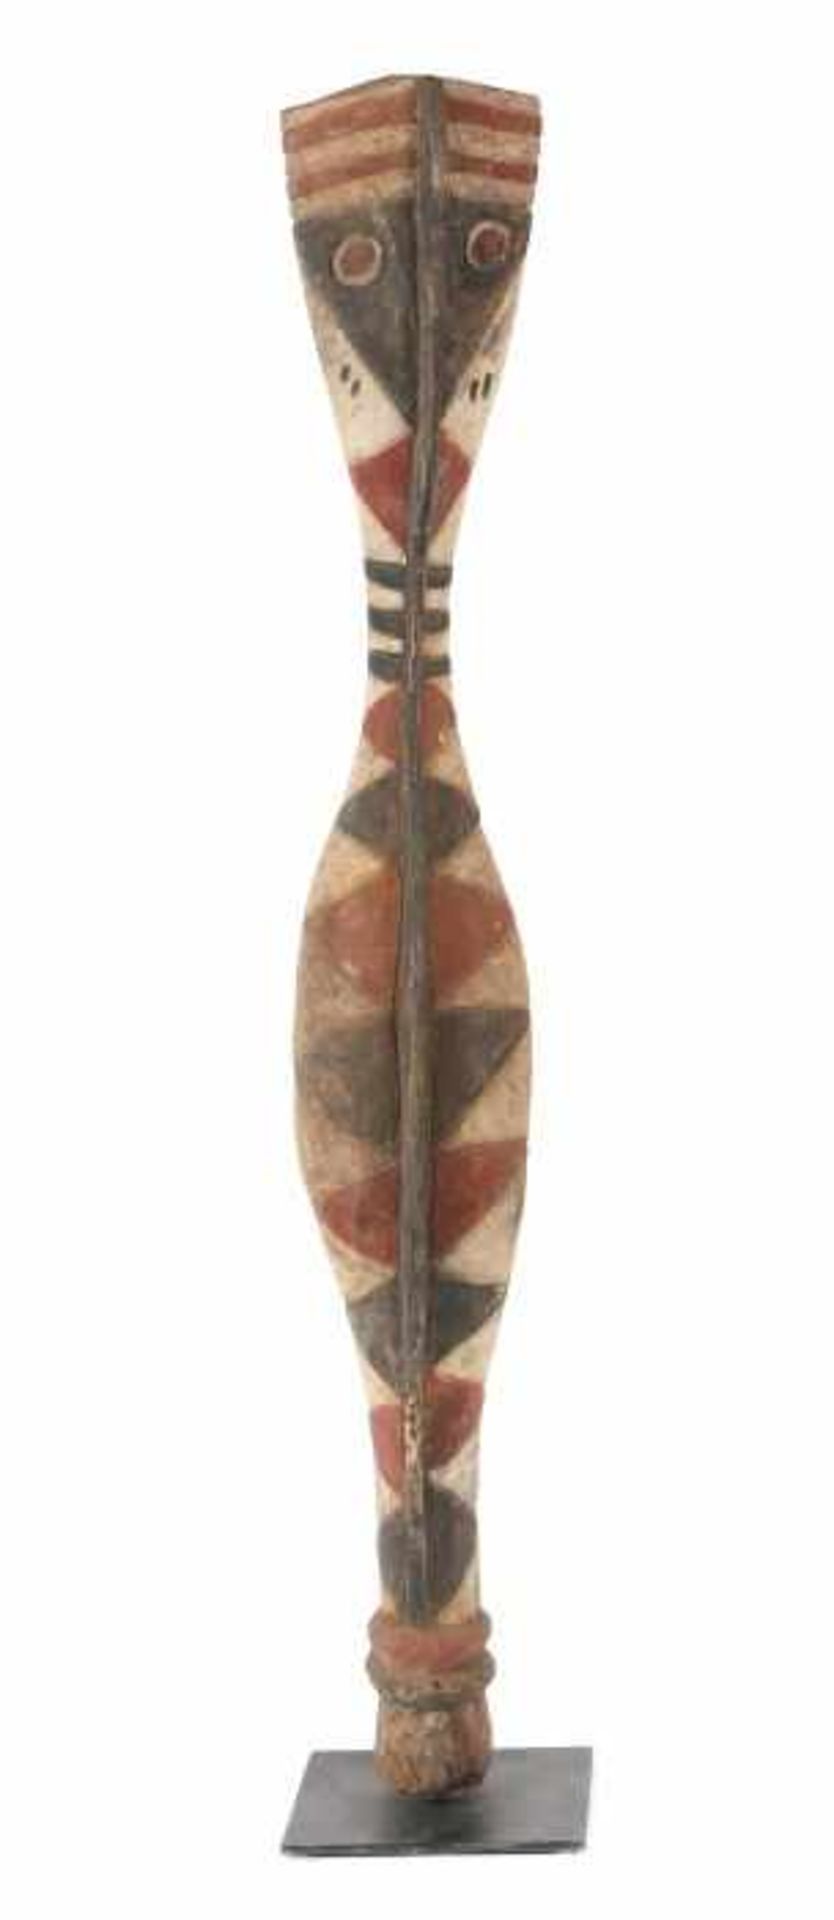 Schlangen-Maske Bansonyi Guinea, Stamm der Baga, Holz, in eingeschnittener geometrischer